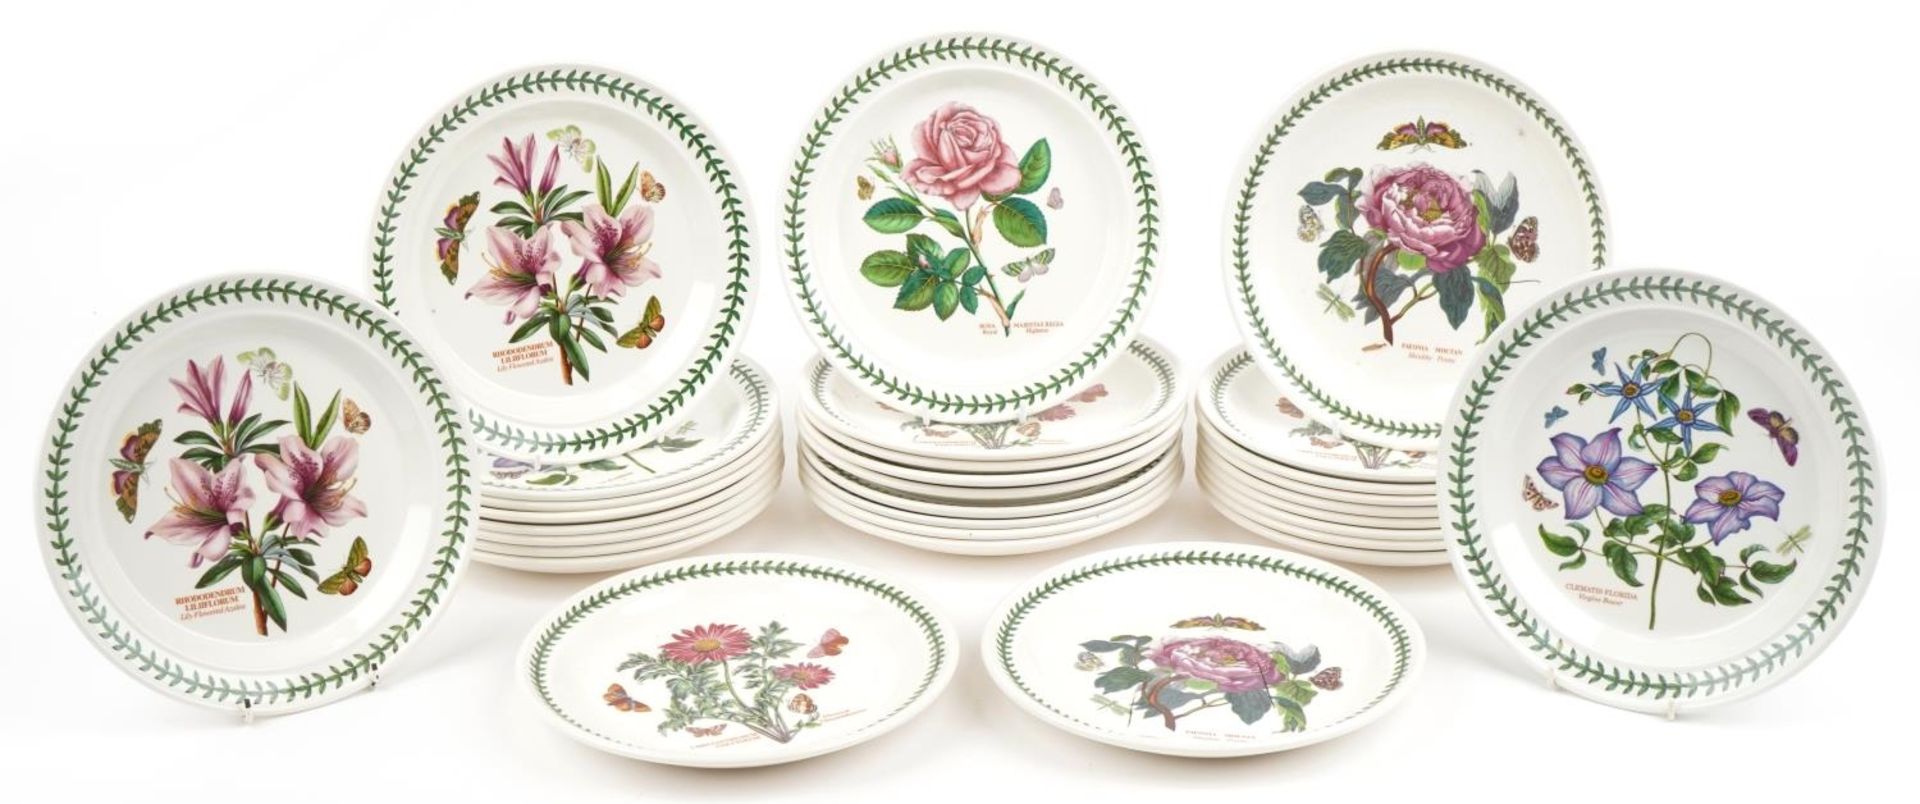 Thirty Portmeirion Botanic garden dinner plates, 27cm in diameter